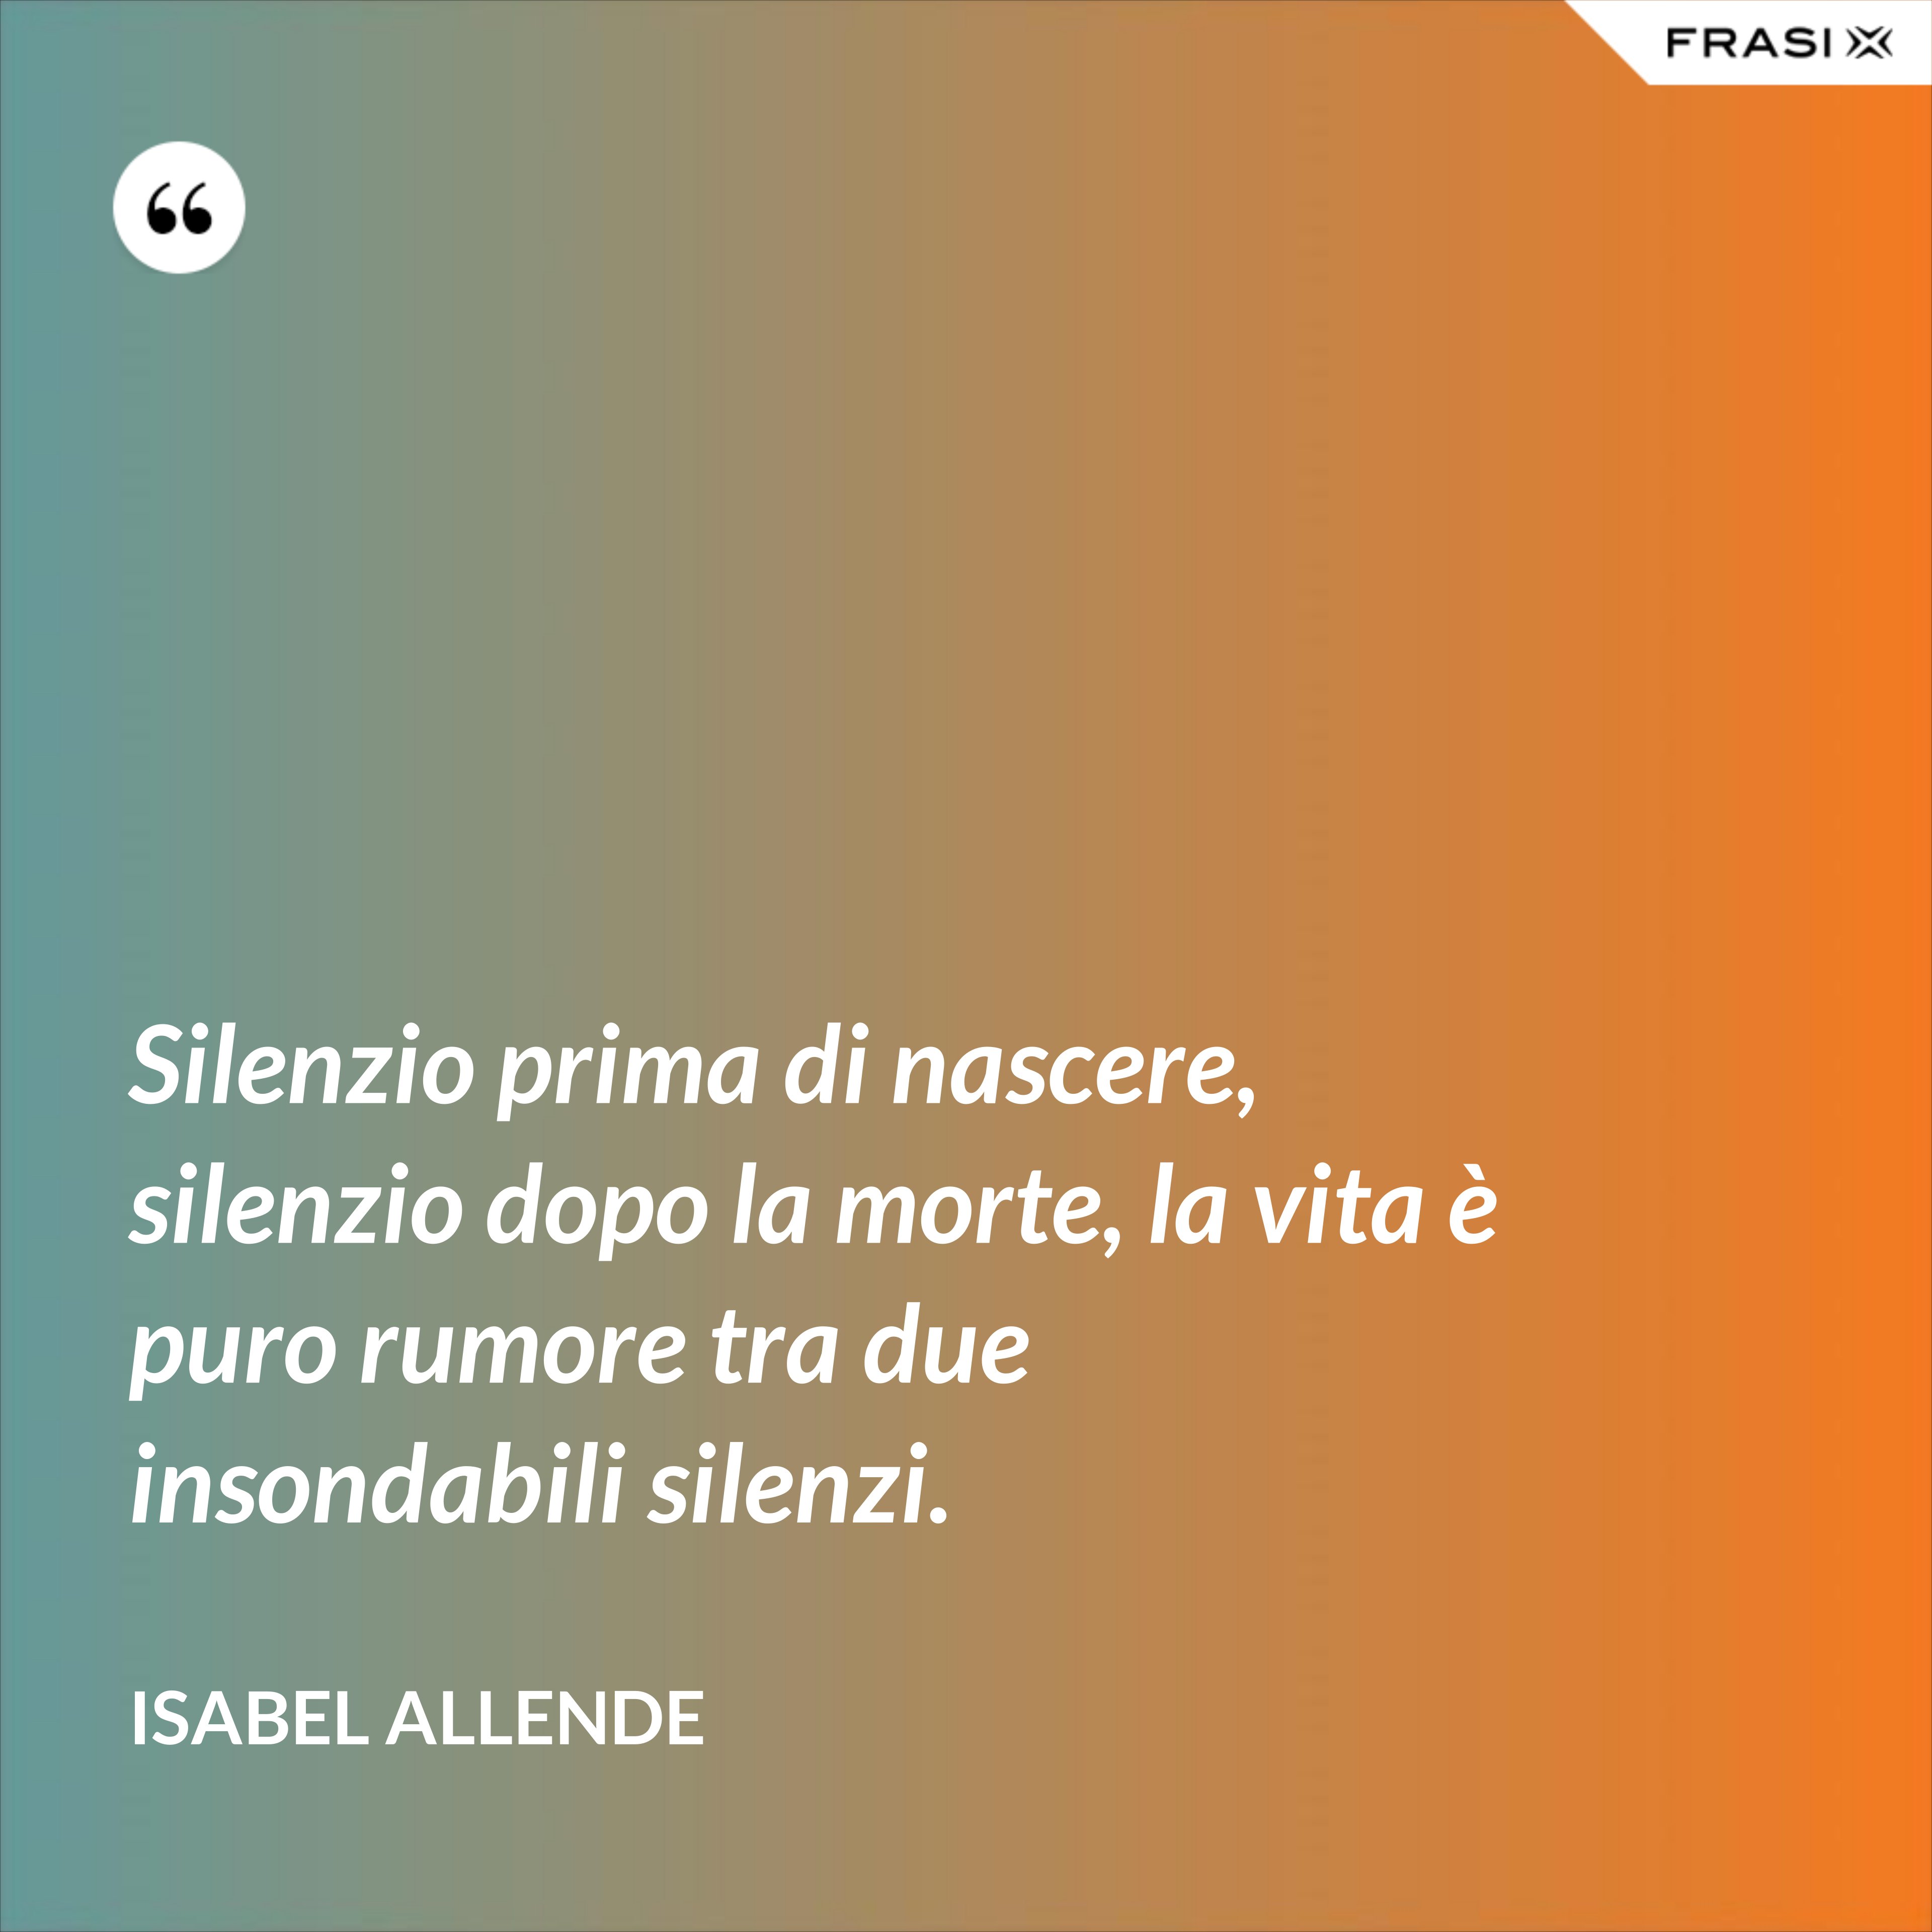 Silenzio prima di nascere, silenzio dopo la morte, la vita è puro rumore tra due insondabili silenzi. - Isabel Allende